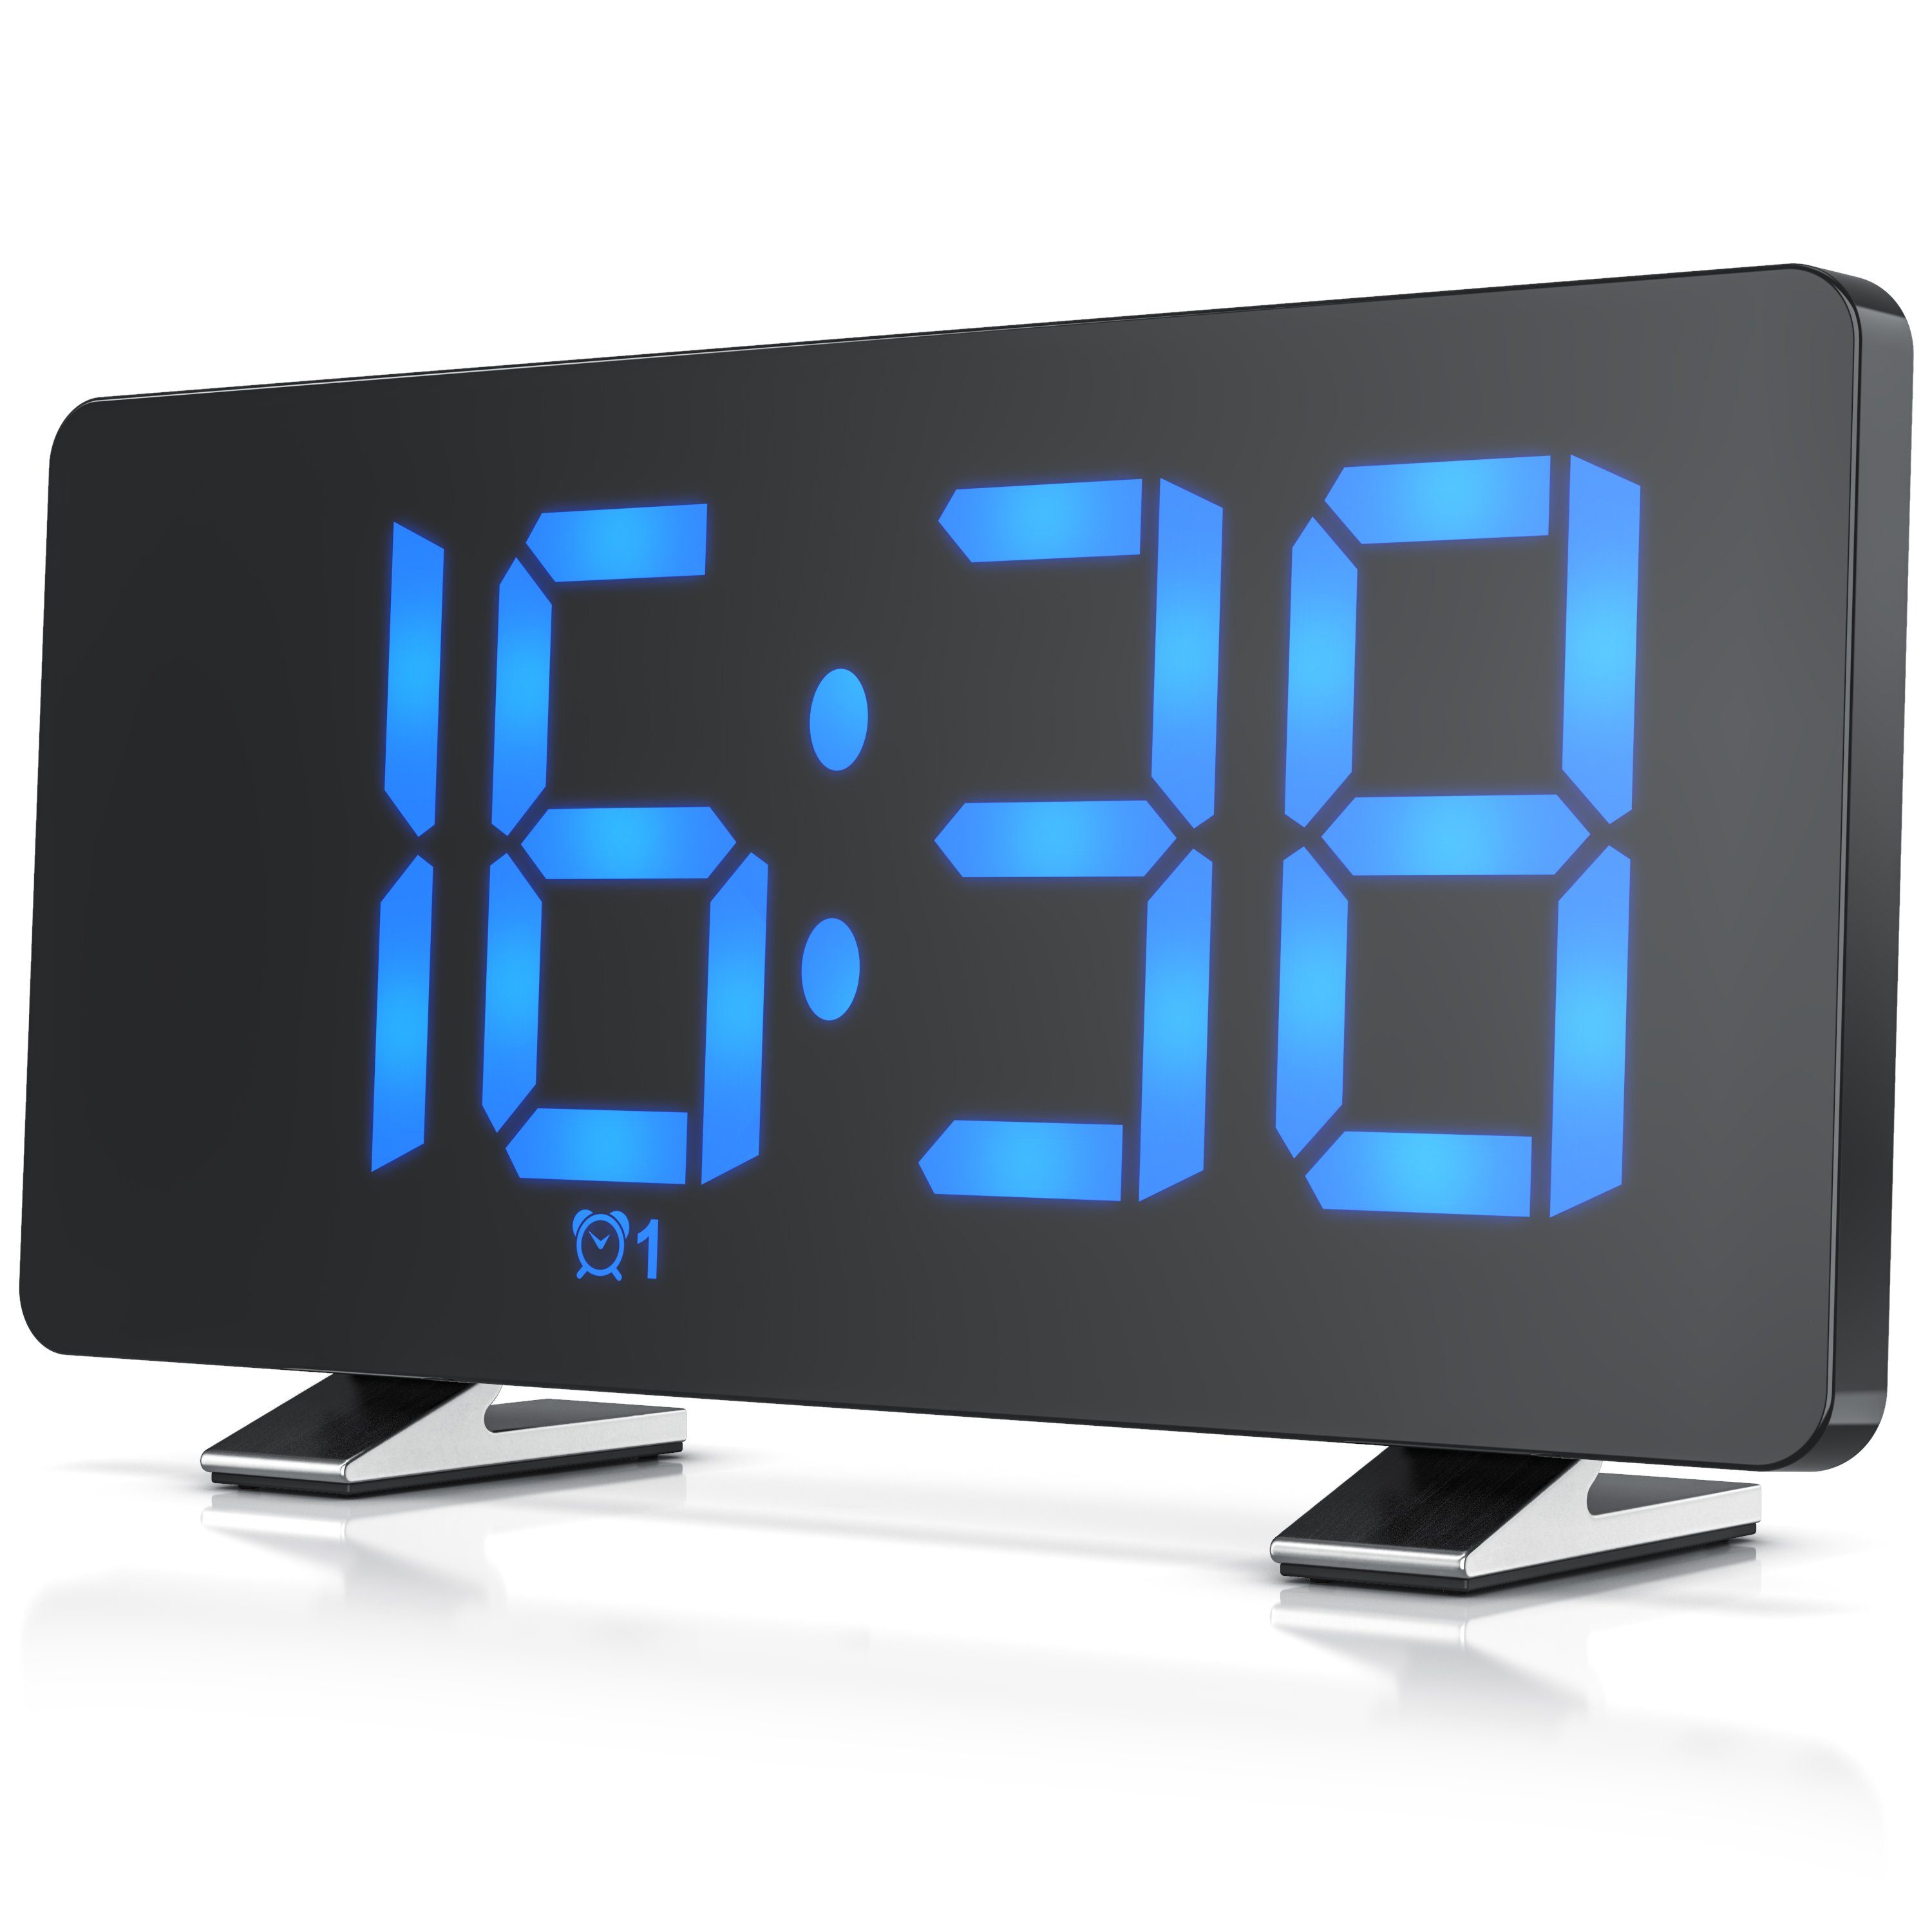 Kaufe Tragbare Auto Digitaluhr Display Elektronische Uhr Auto Uhr